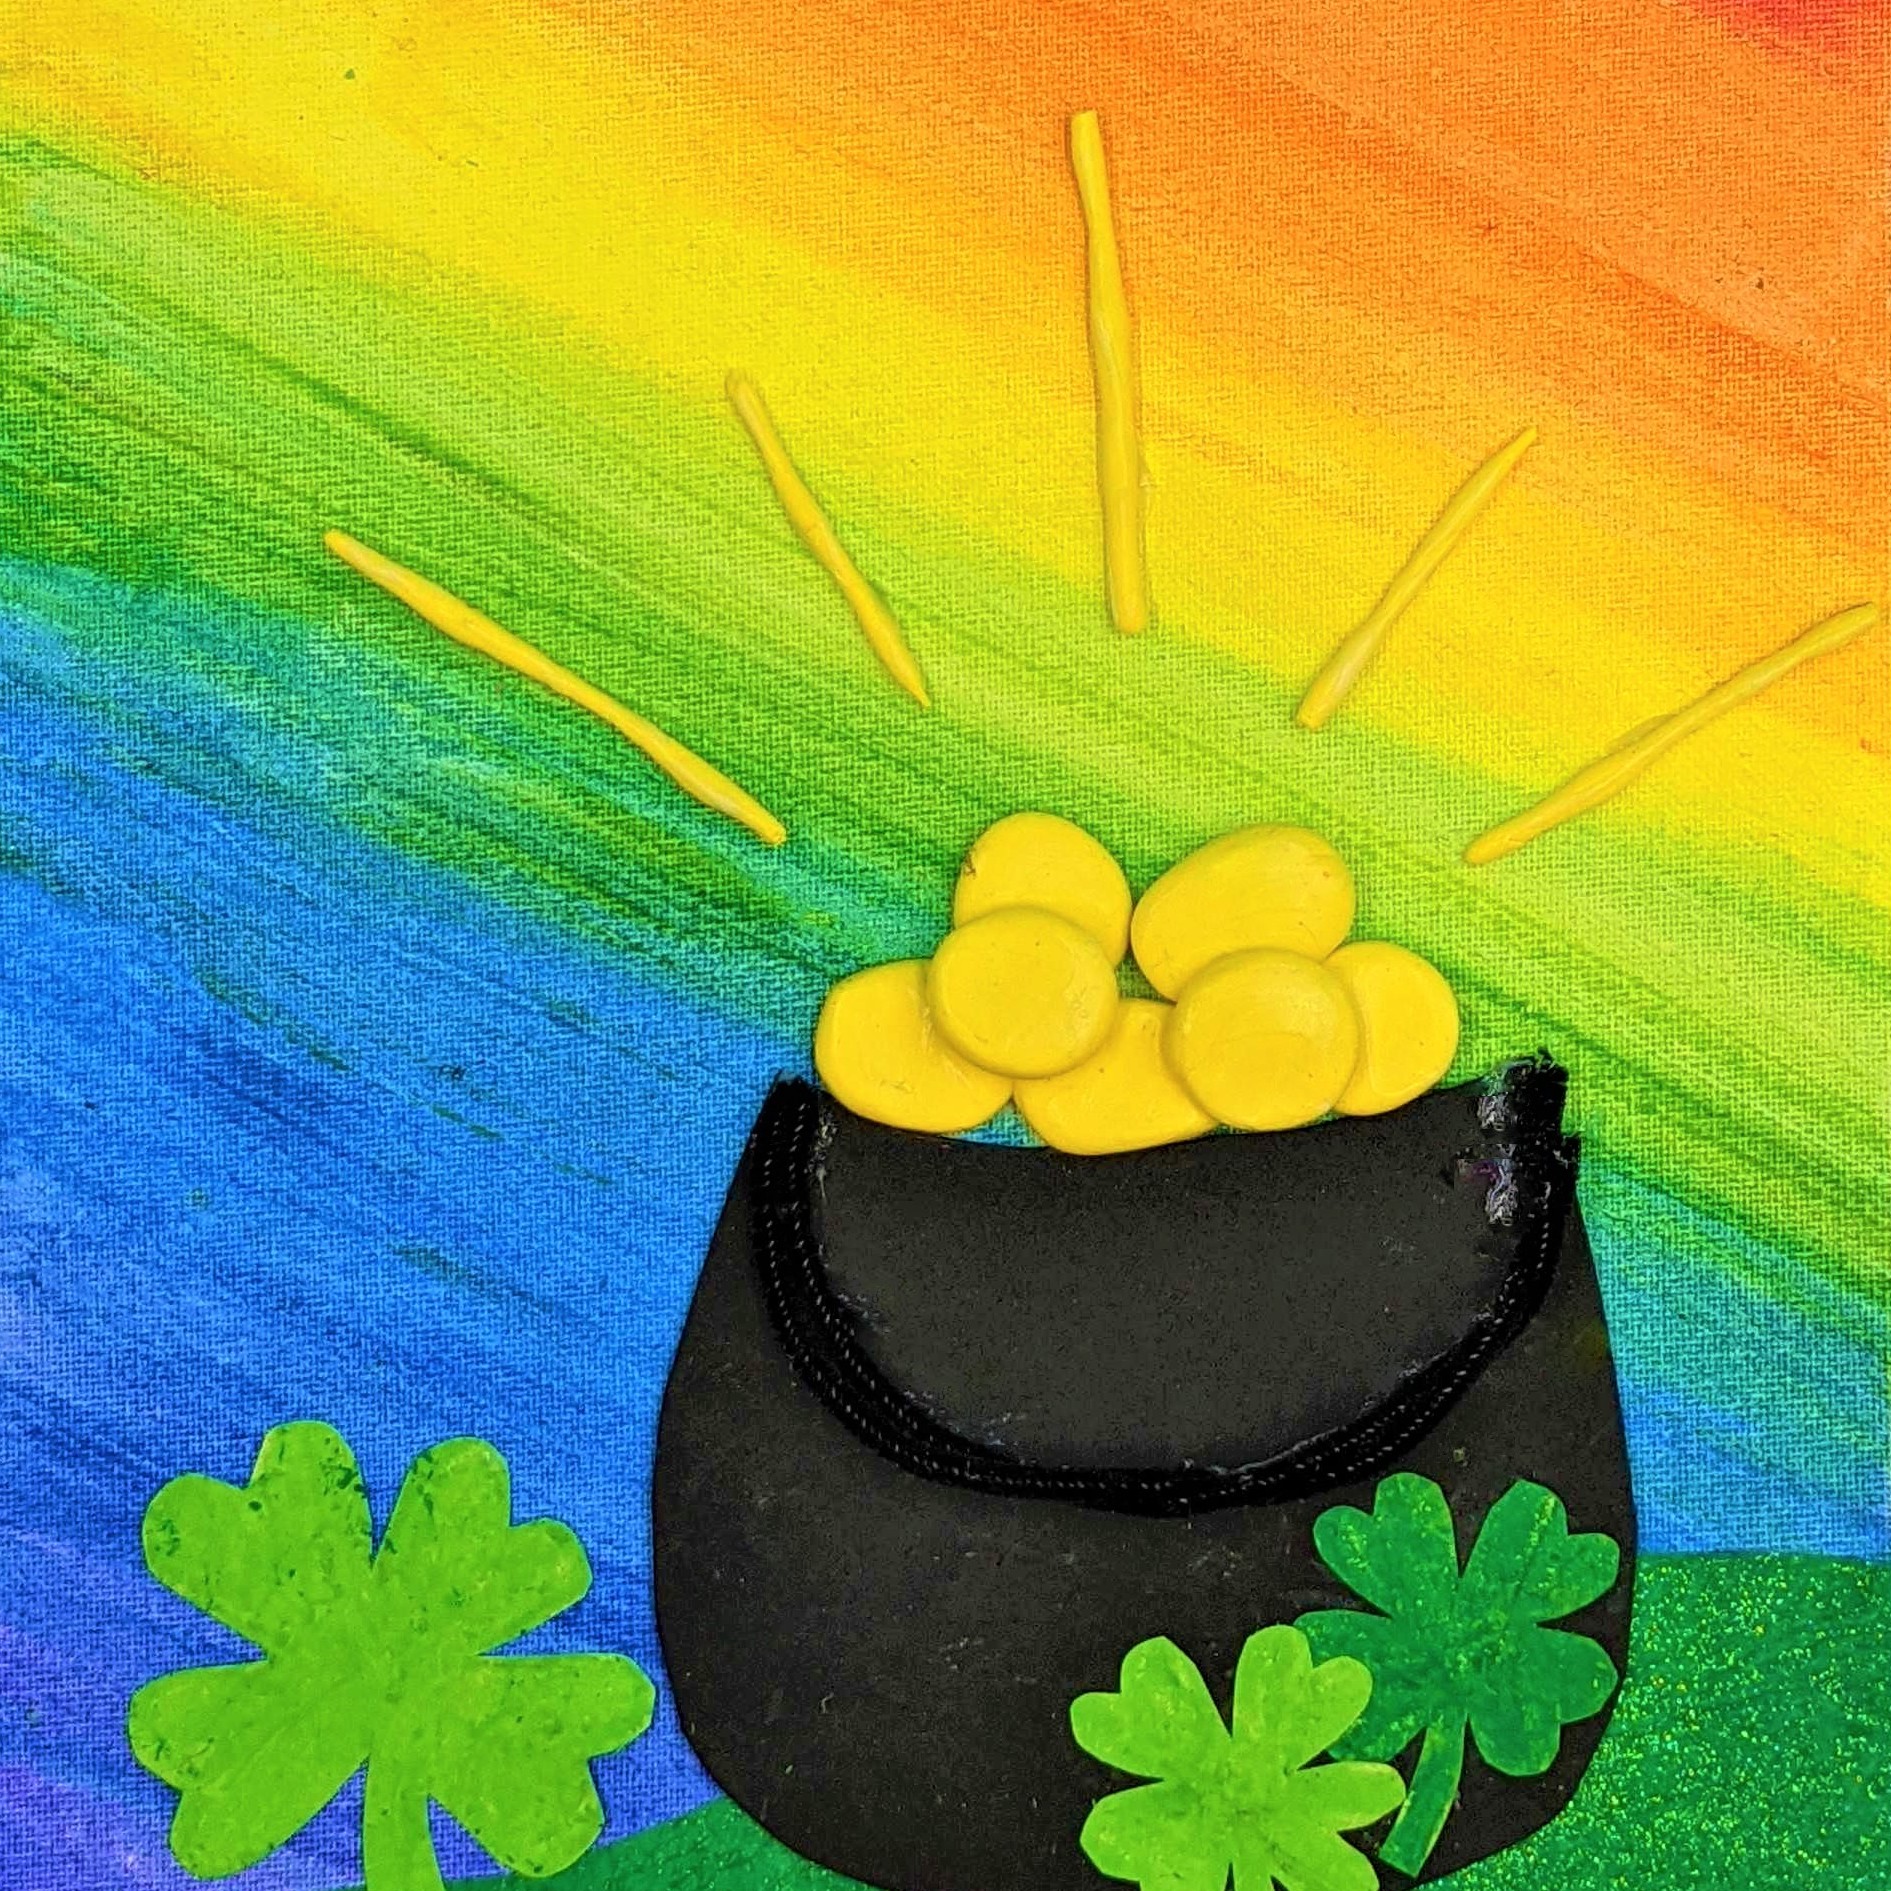 Kidcreate Studio - Bloomfield, St. Patrick's Day Rainbow on Canvas Art Project